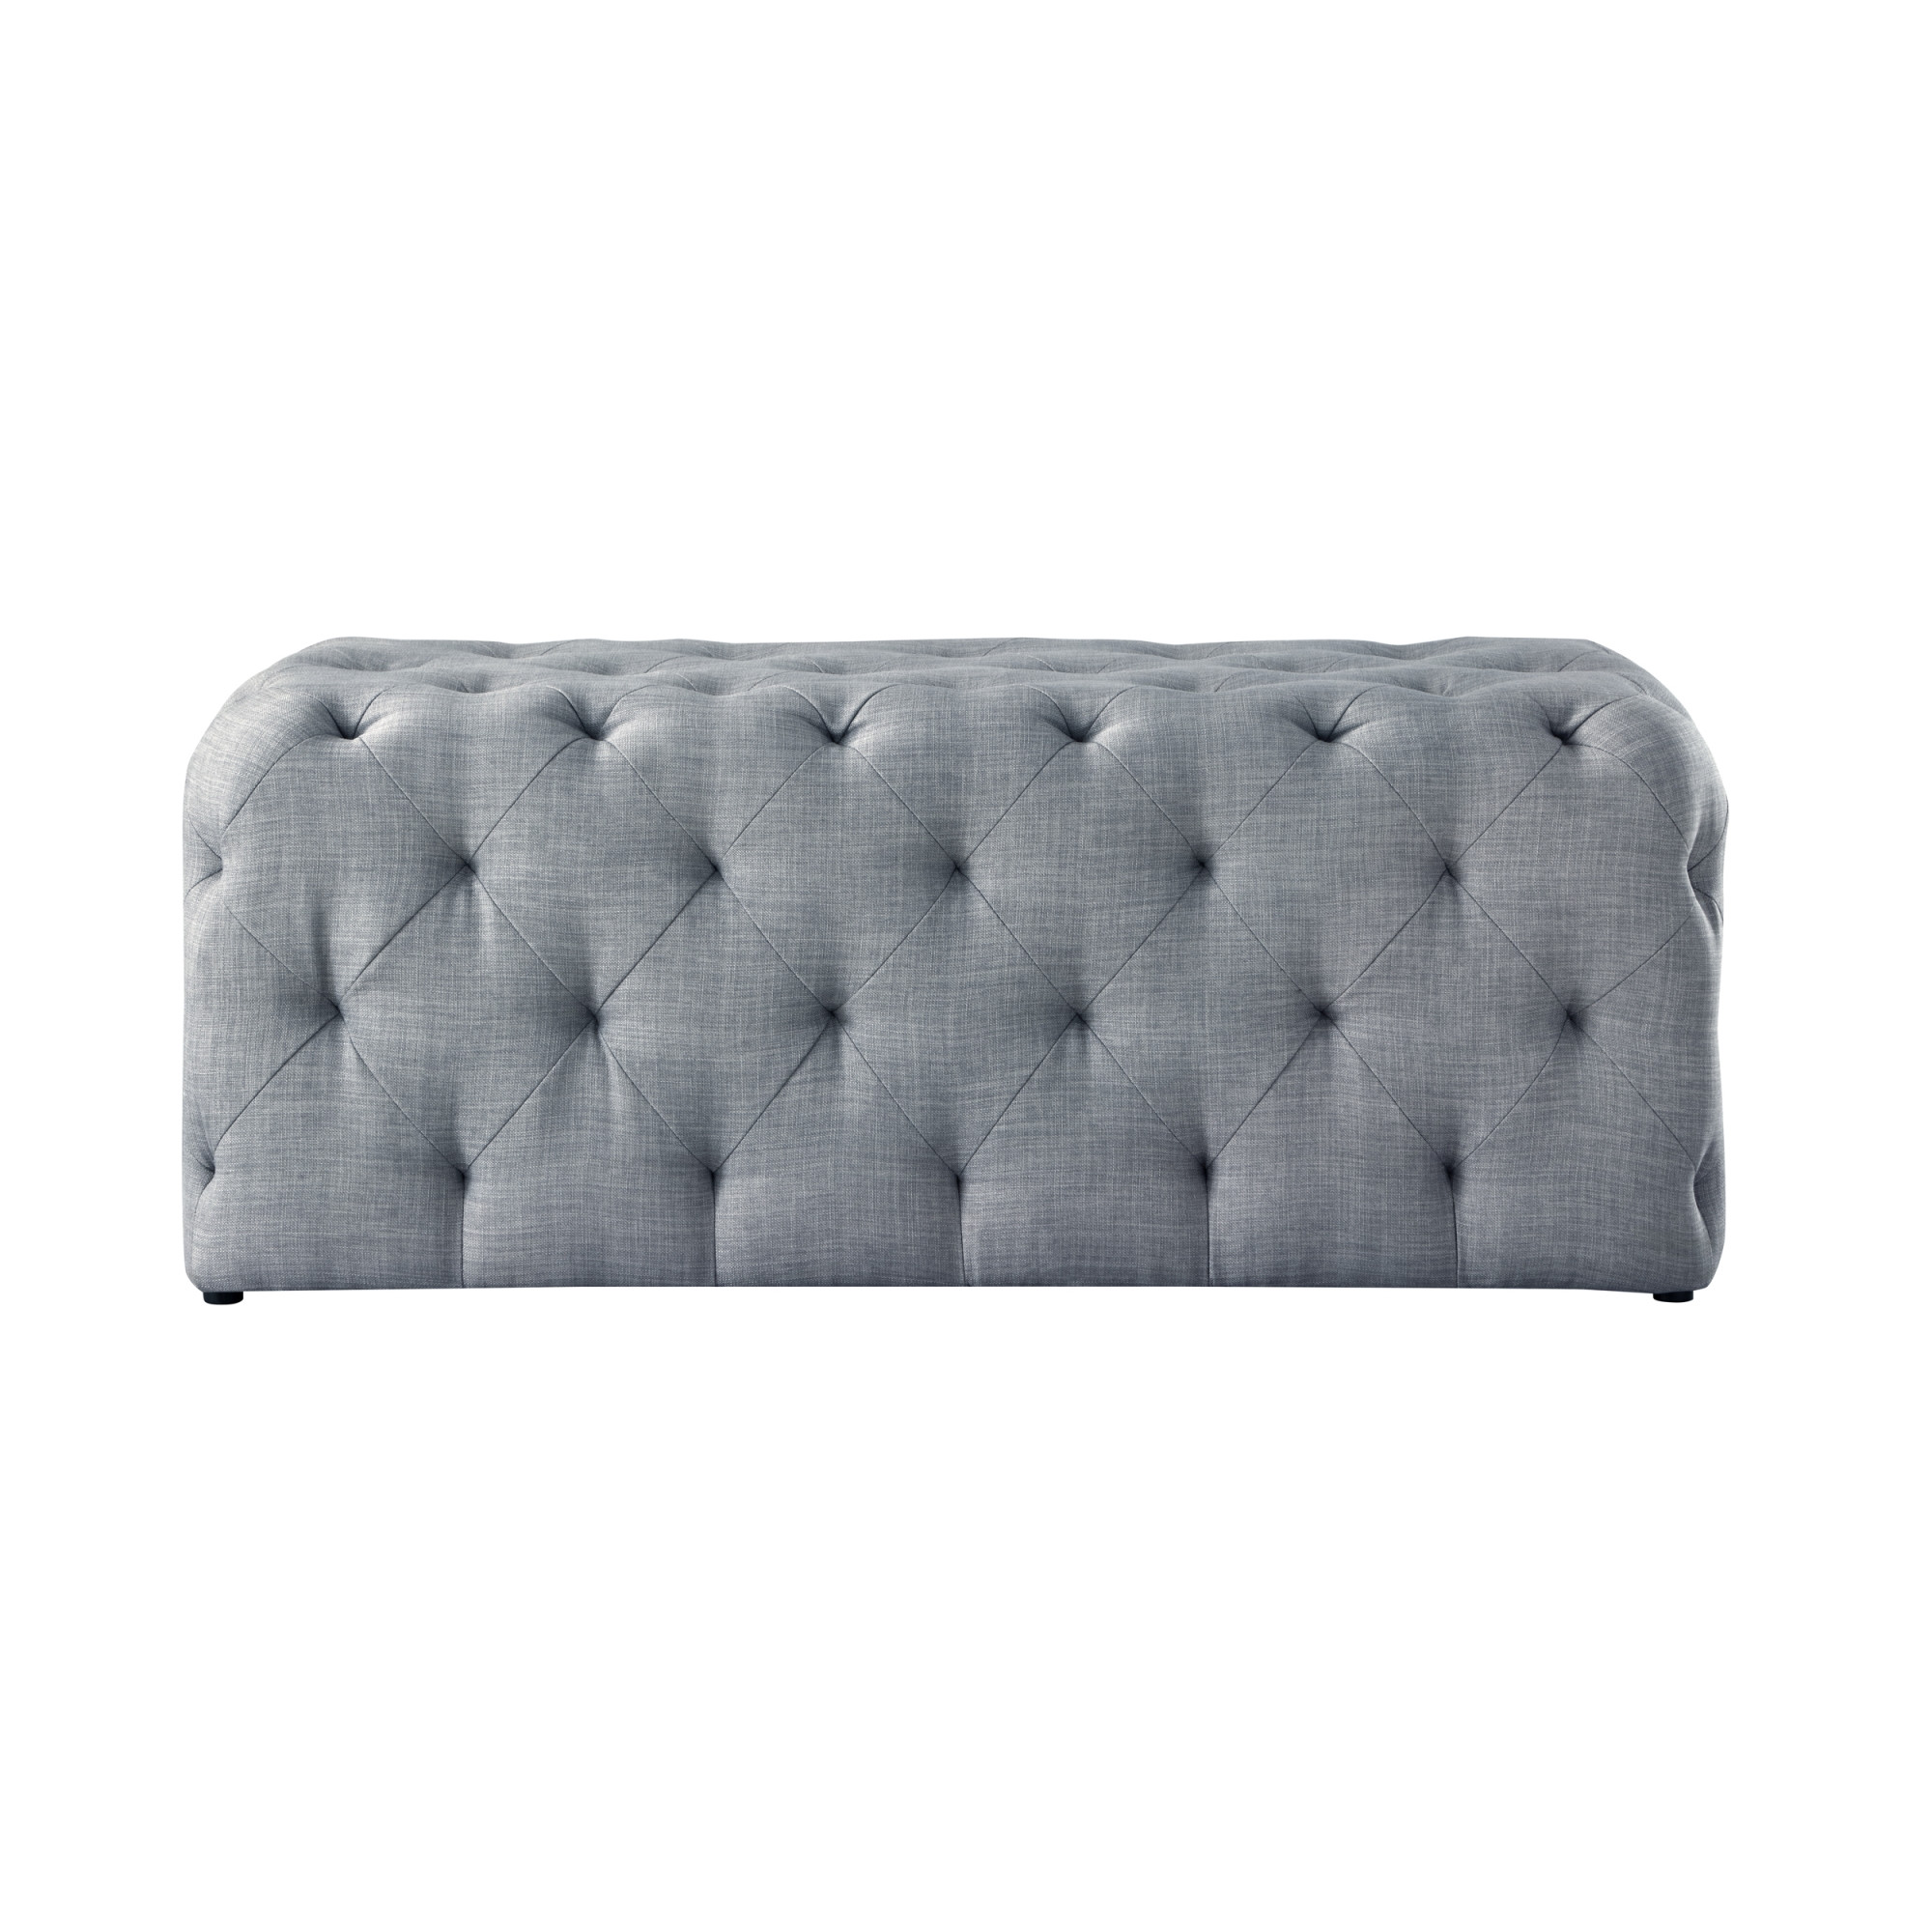 48" Light Gray And Black Upholstered Linen Bench-490943-1